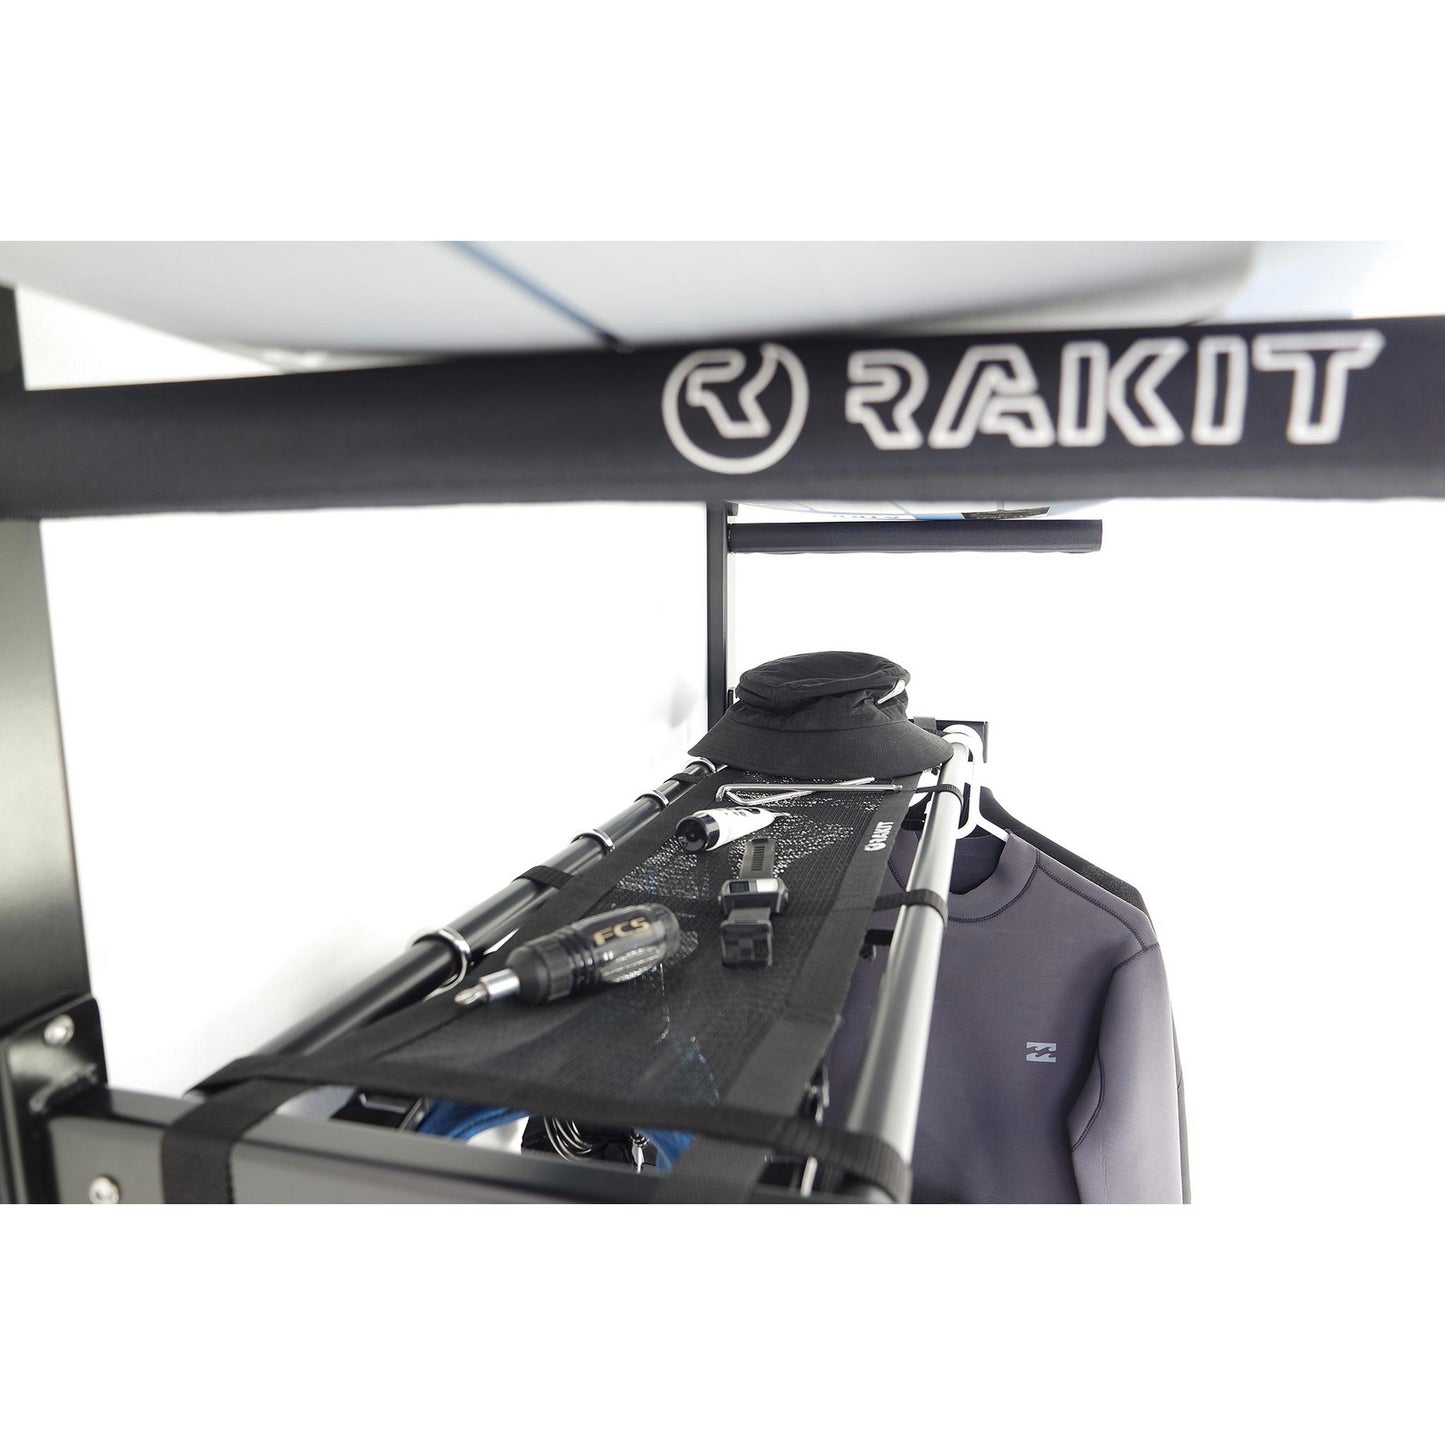 Kite Station Plus by Rakit Systems